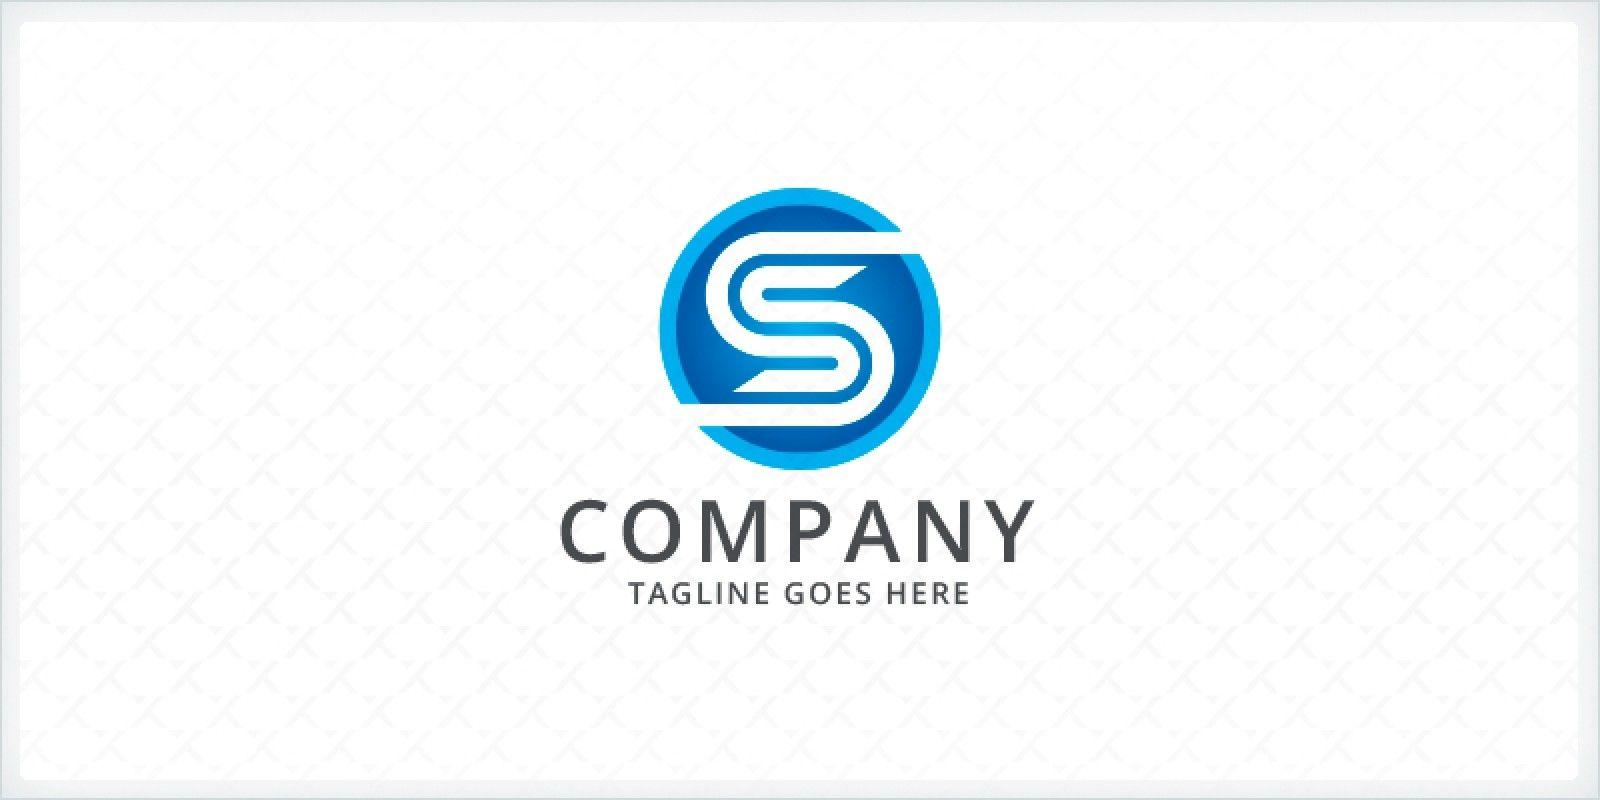 SS Logo - Letter S or SS Logo | Codester